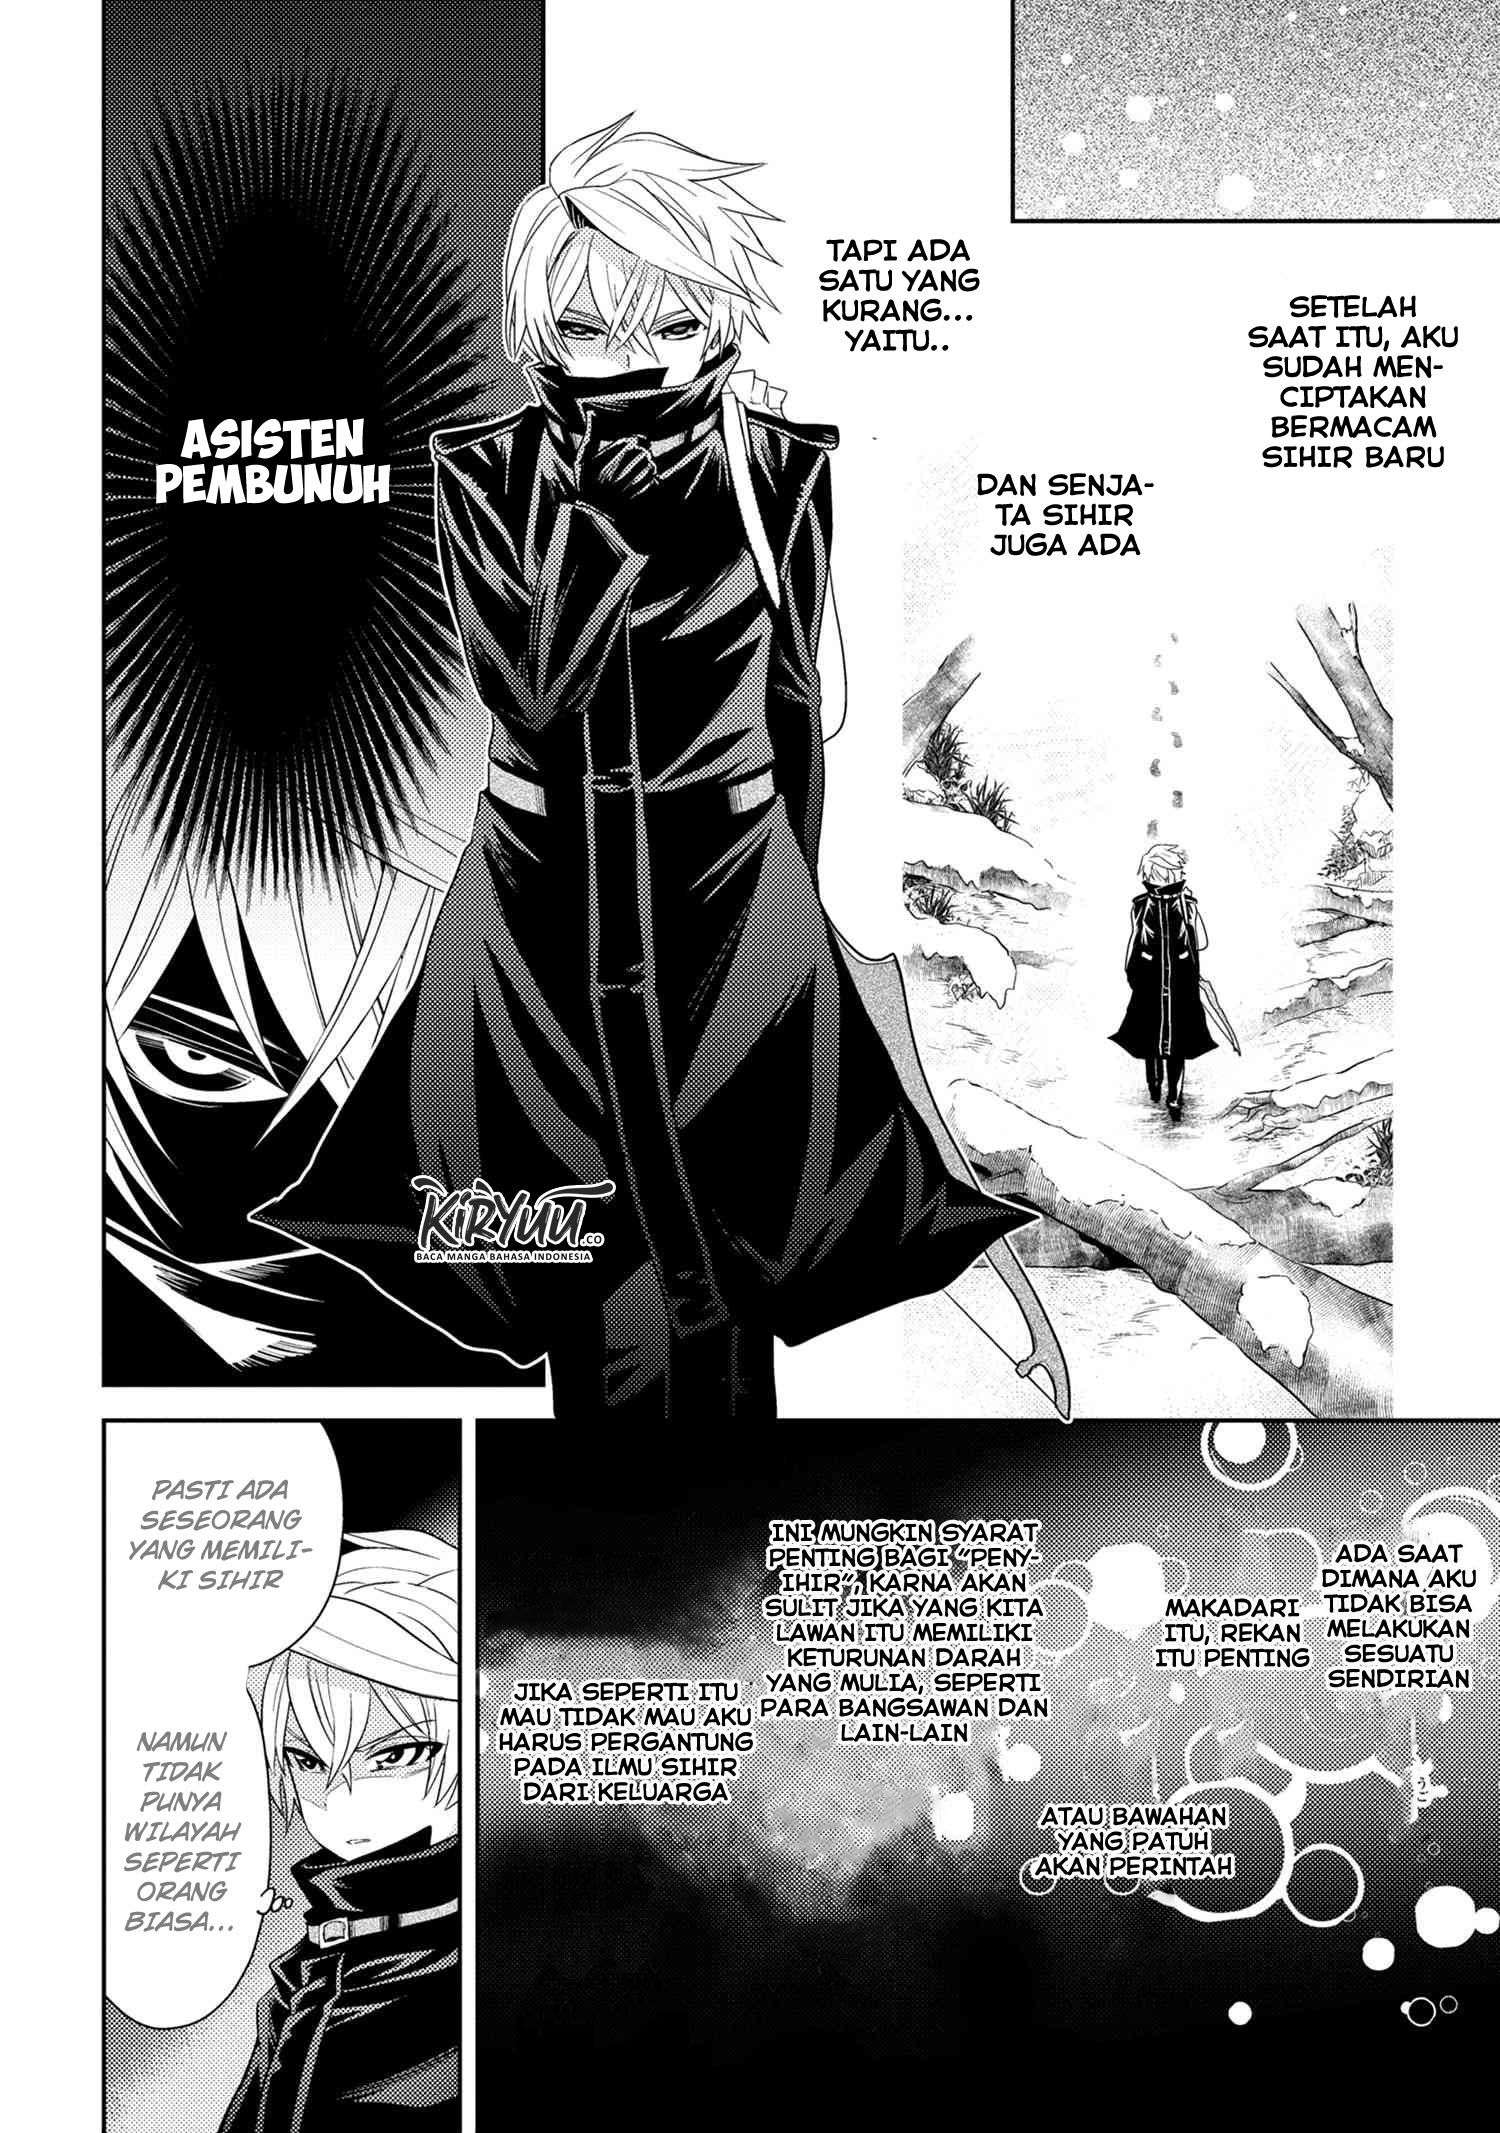 Sekai Saikyou no Assassin, Isekai Kizoku ni Tensei Suru Chapter 3.2 Bahasa Indonesia